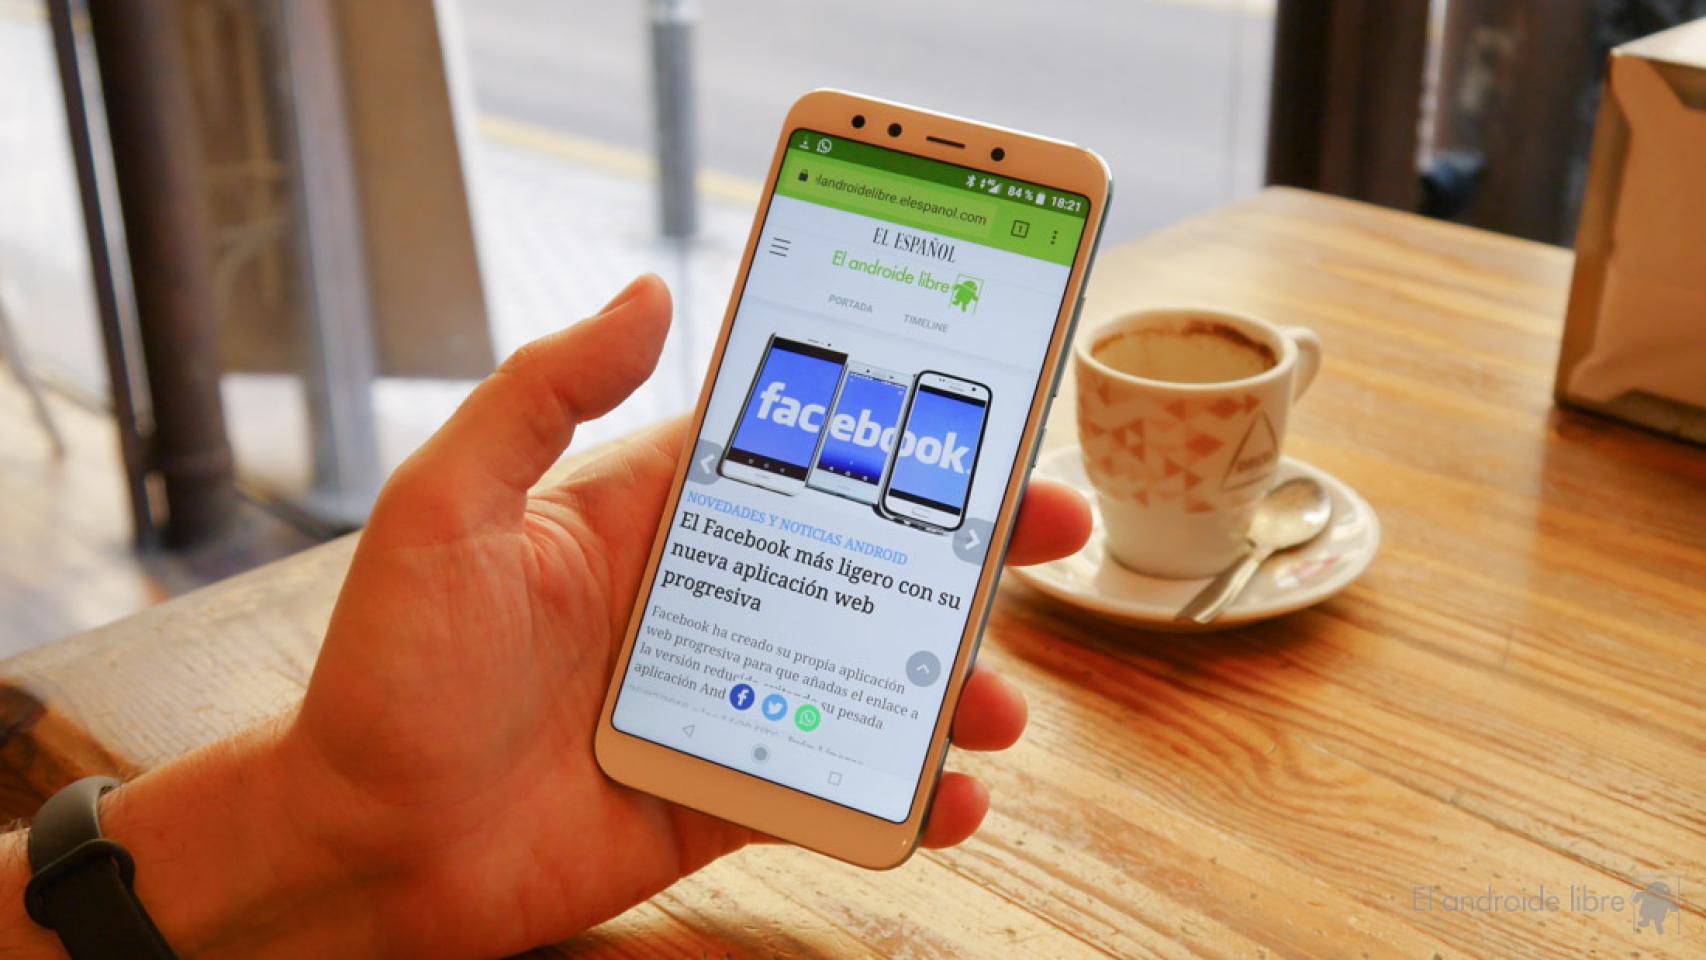 Xiaomi relanza la actualización a Android 10 del Xiaomi Mi A2